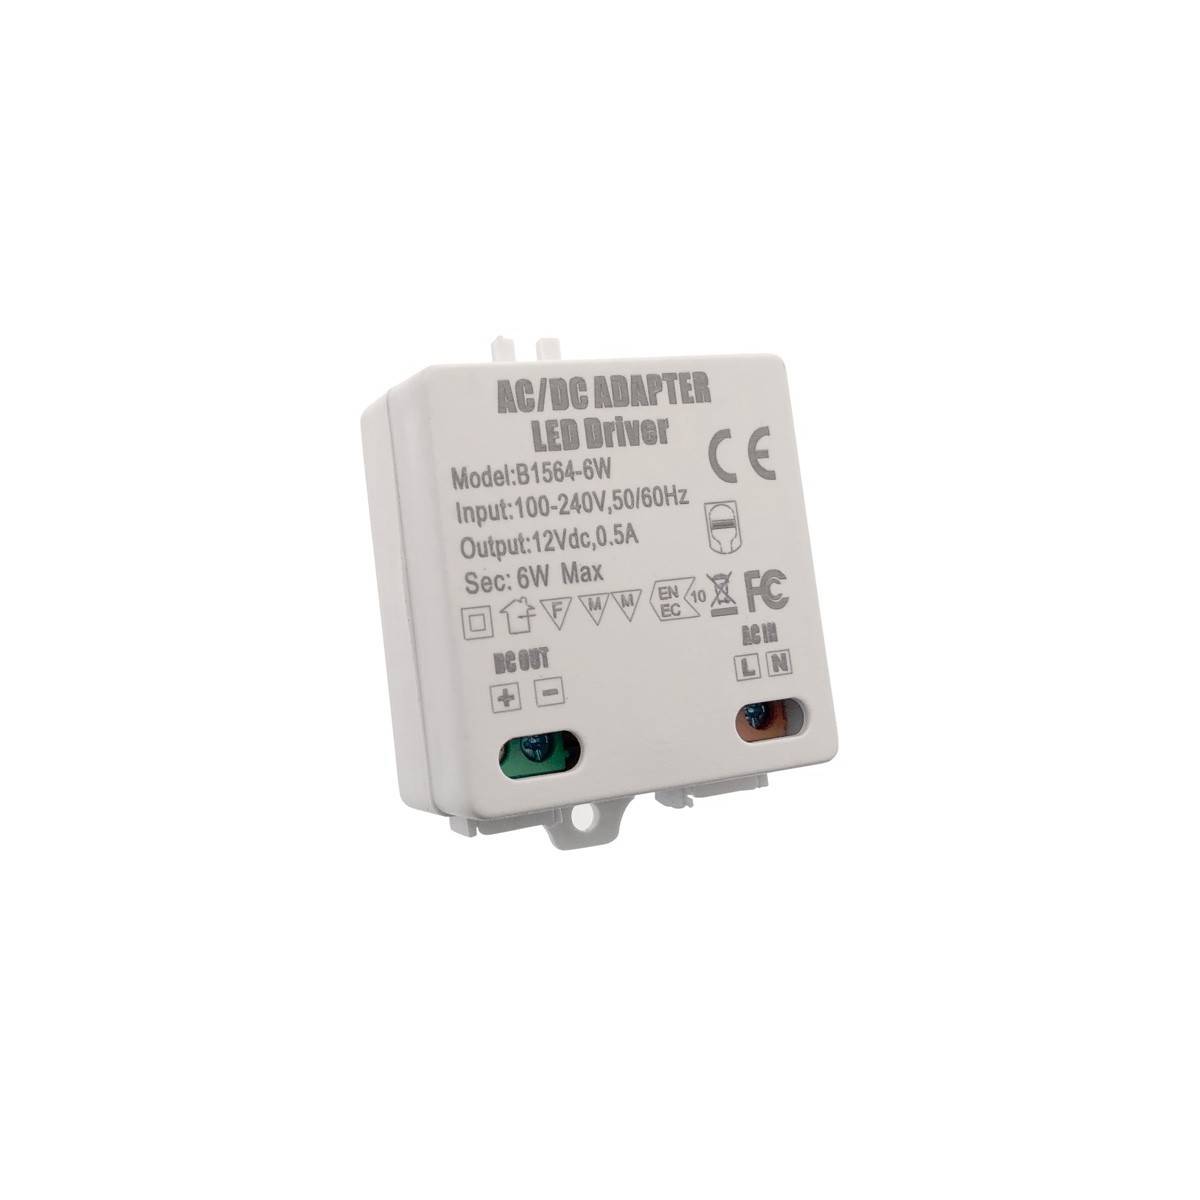 Transformador LED pequeño MPL-06-12 | 6W | 12V DC